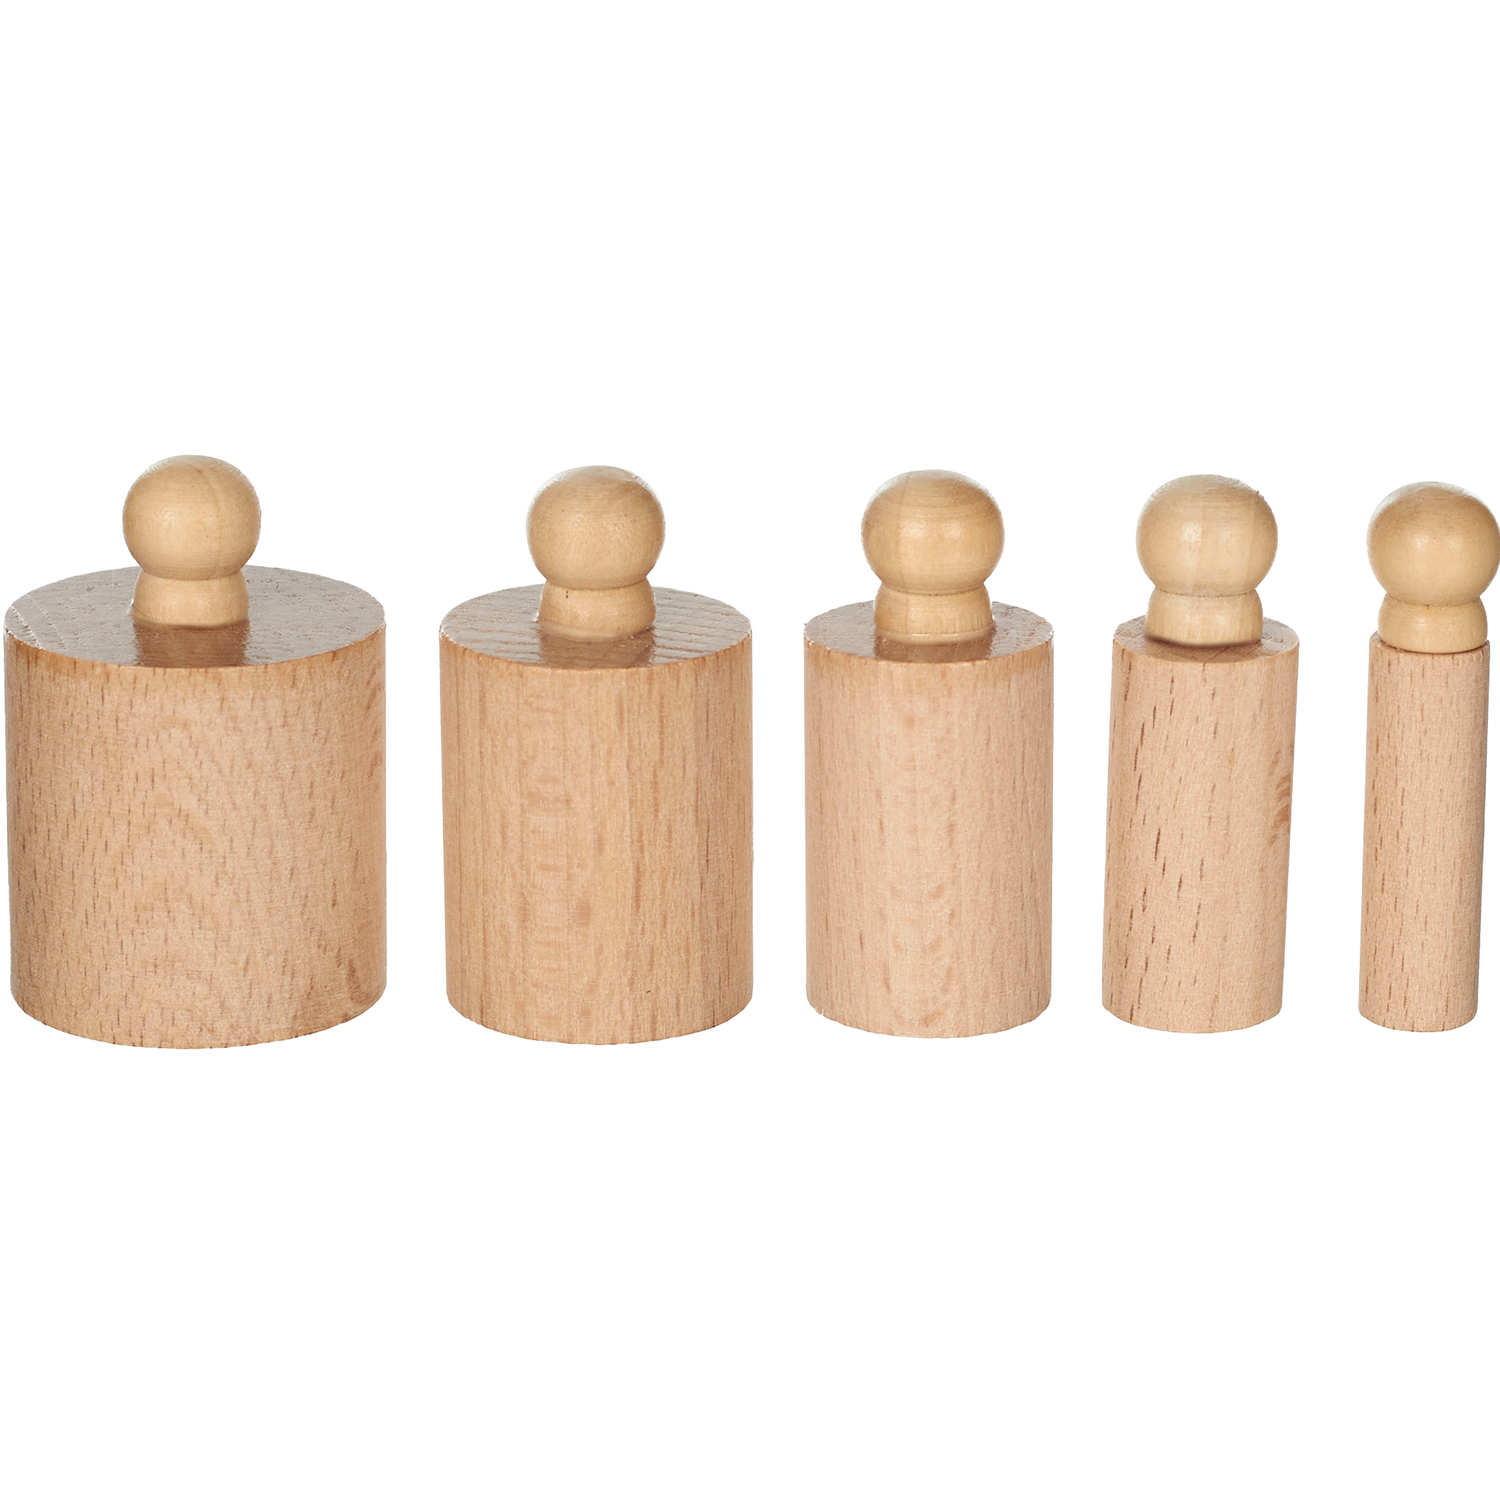 Развивающая игра Монтессори КУЗЯ ТУТ Игровой набор Чудо цилиндры из дерева (Бук) 4 блока с бочонками в наборе - фото 7